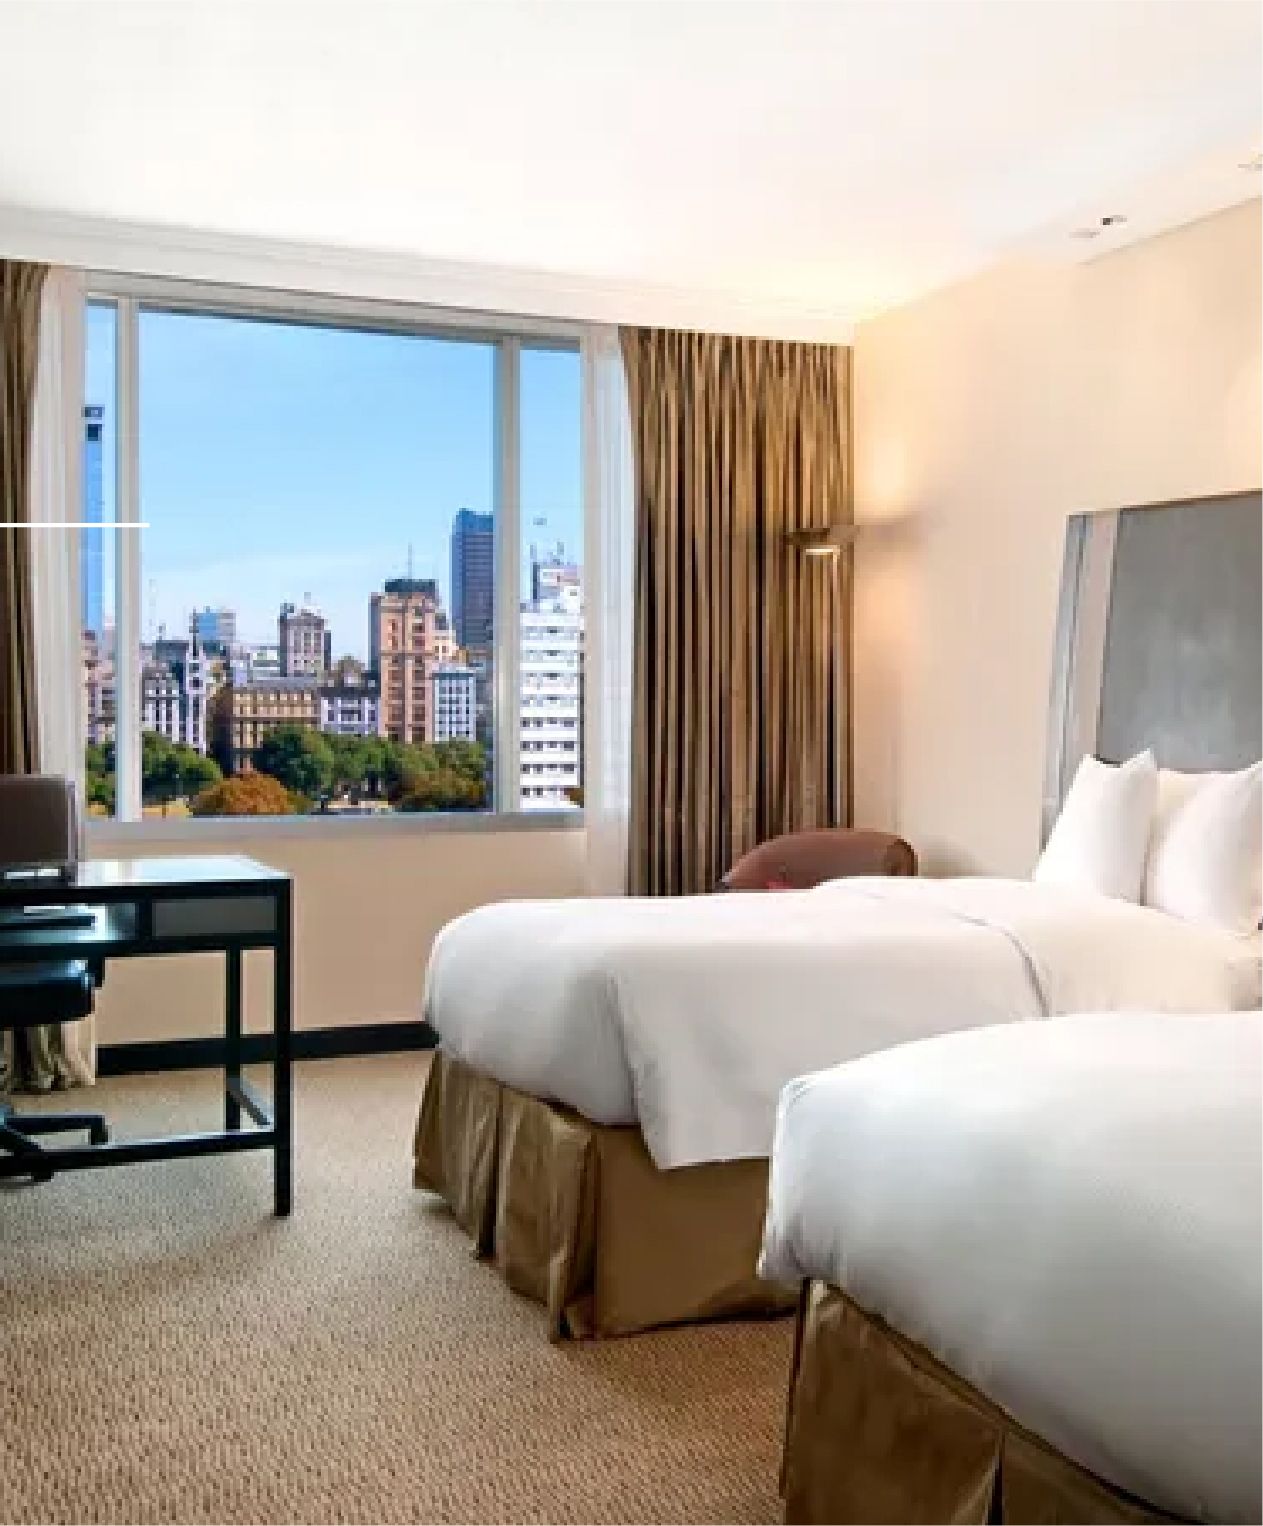 Una habitación de hotel con dos camas, un escritorio y un gran ventanal.